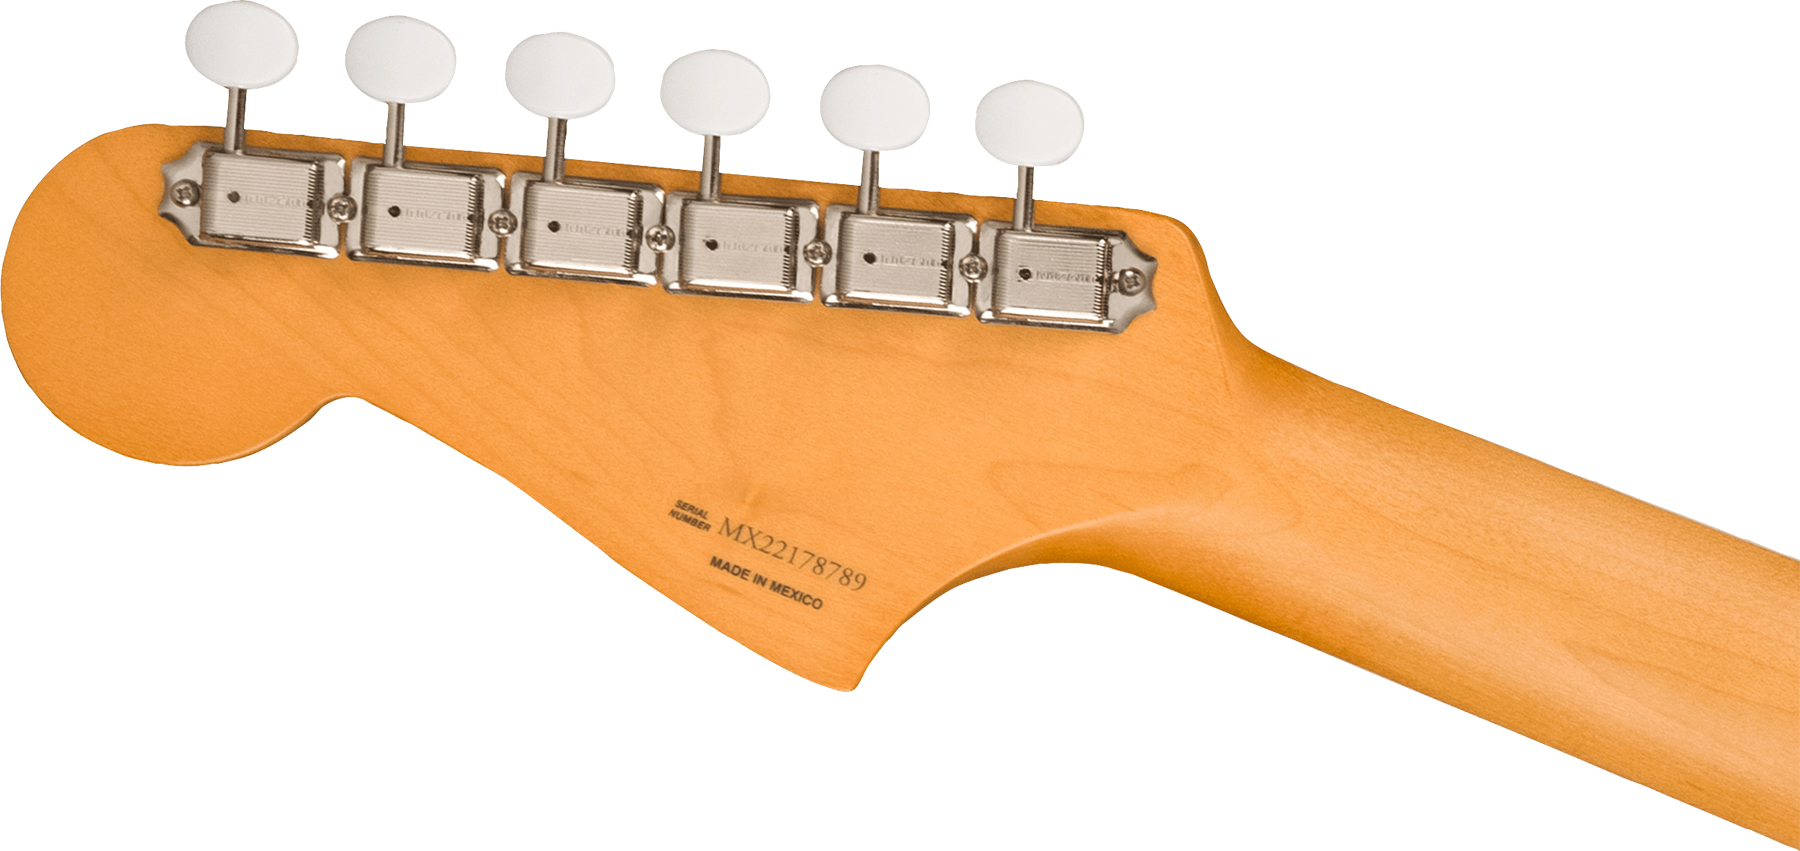 Fender Jazzmaster Gold Foil Ltd Mex 3mh Trem Bigsby Eb - Candy Apple Burst - Guitare Électrique RÉtro Rock - Variation 3